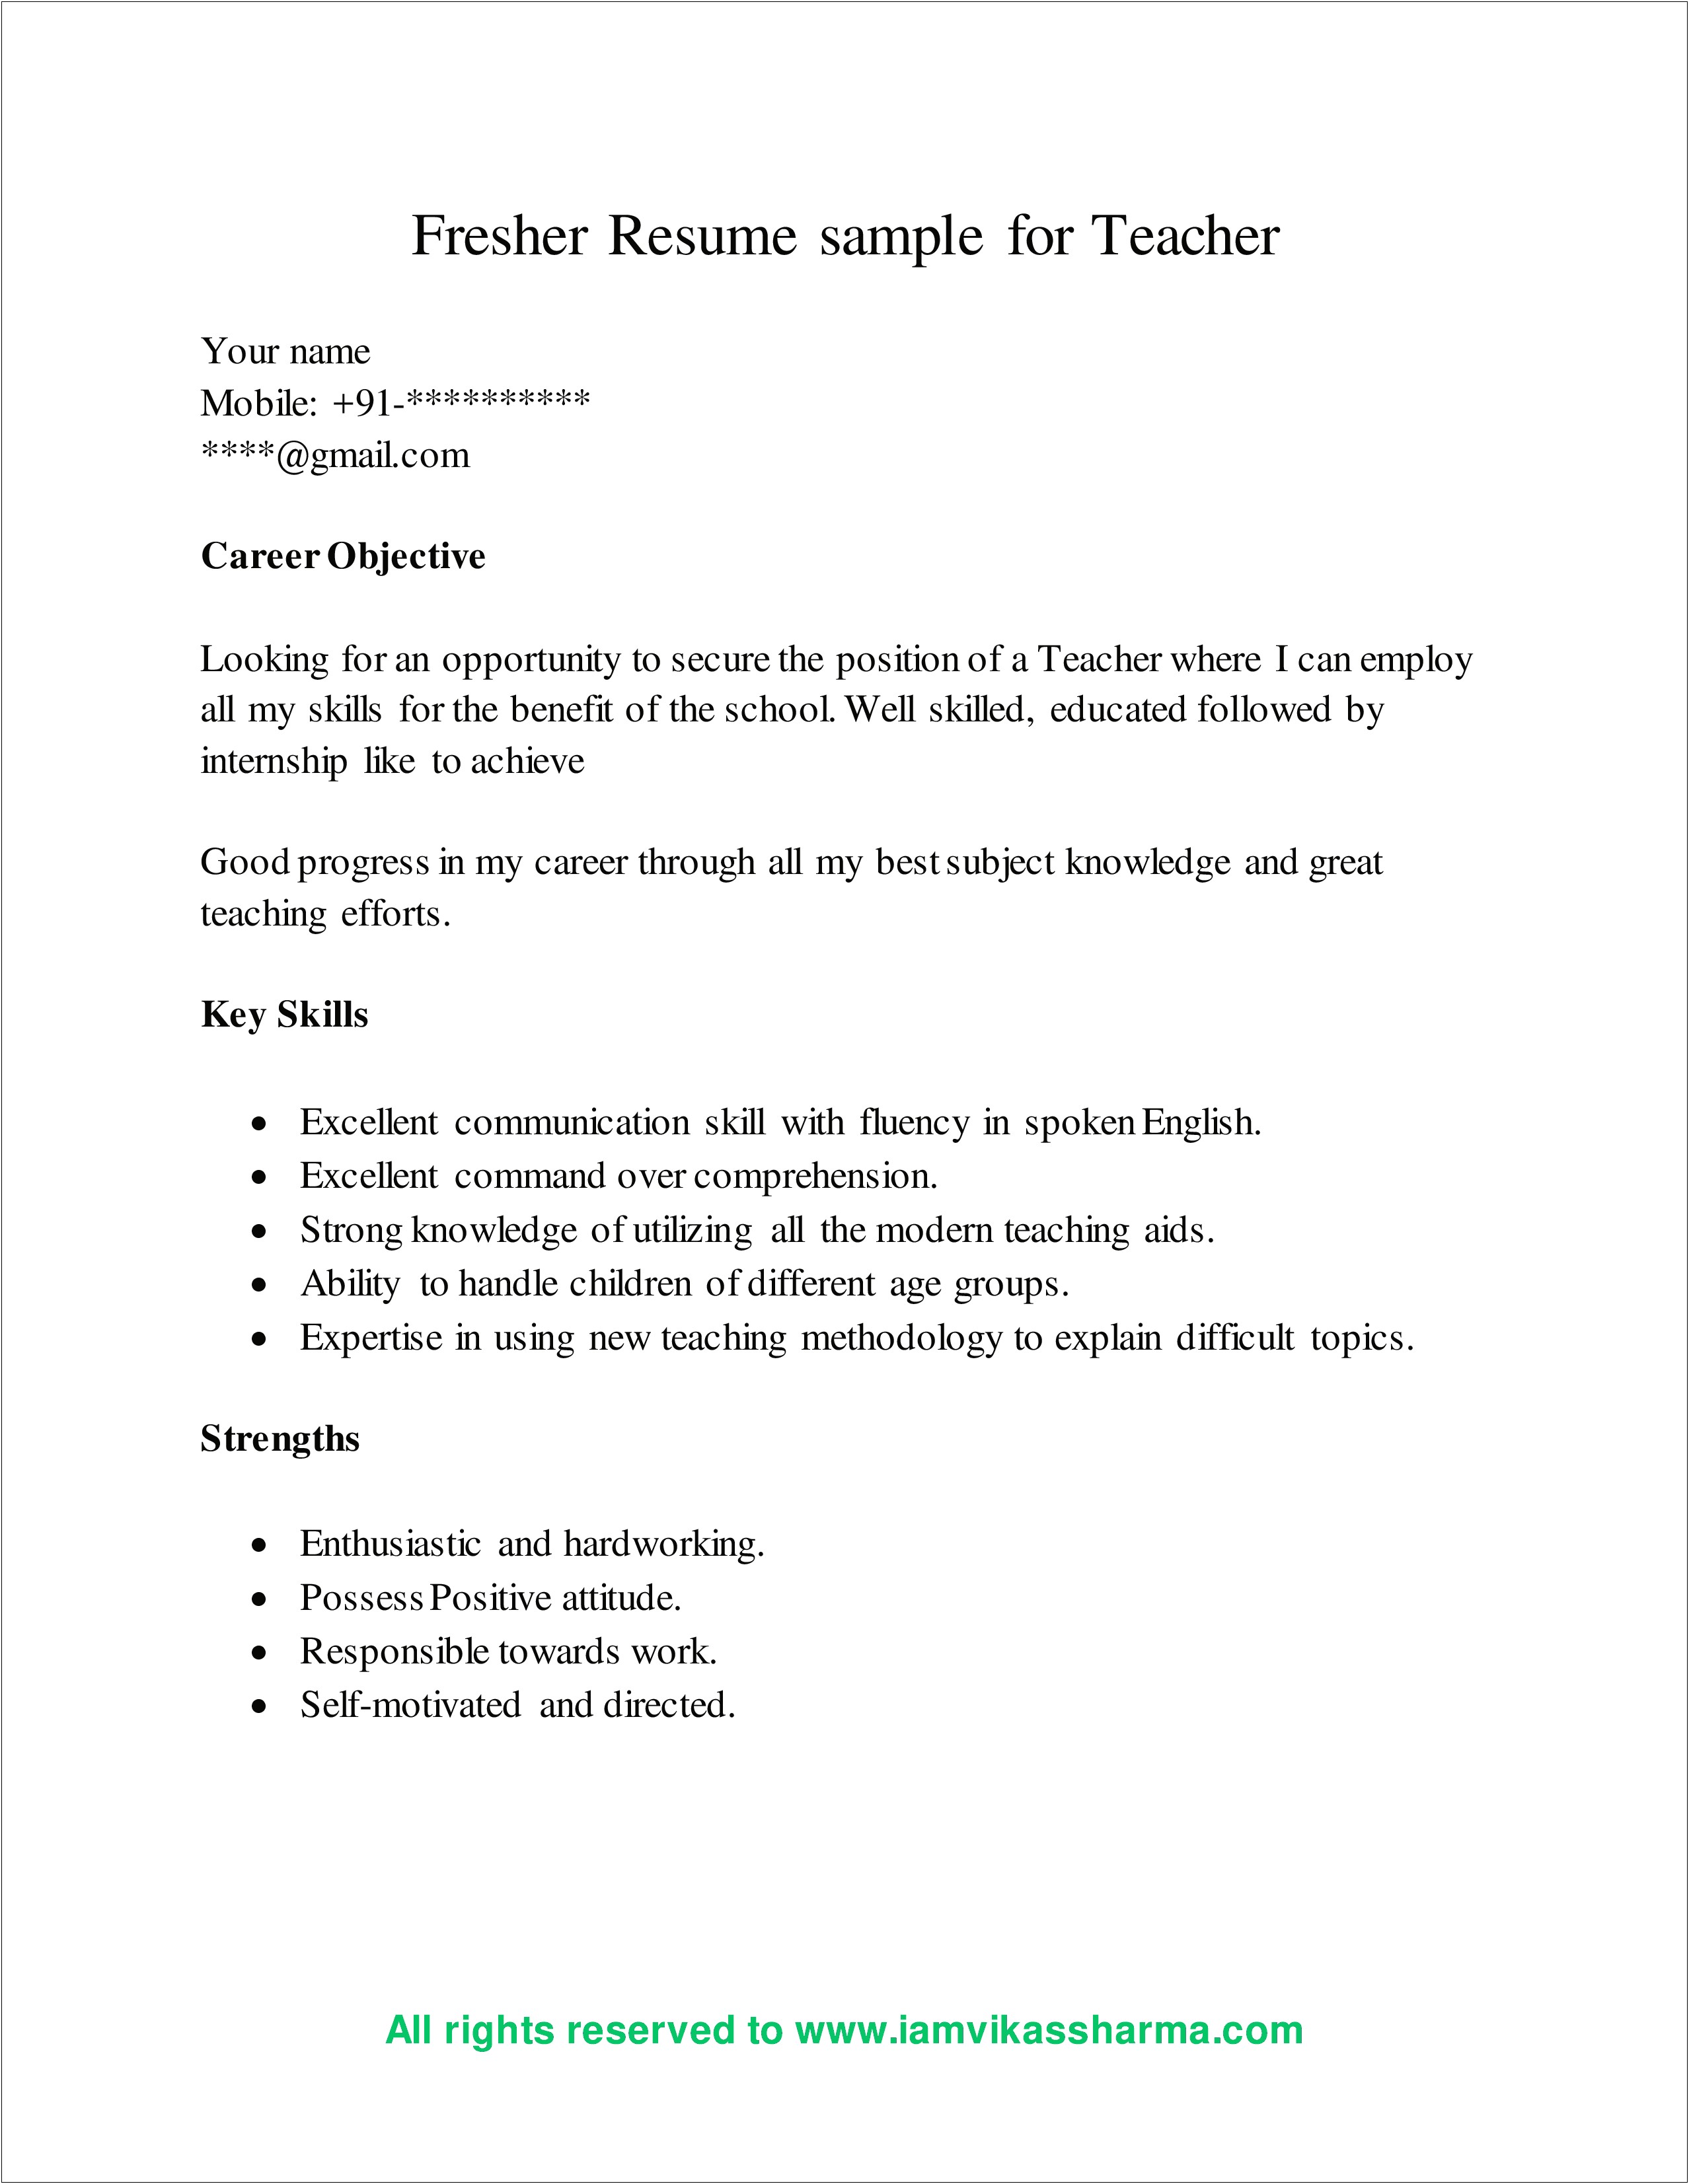 Resume For Teaching Job In School For Fresher